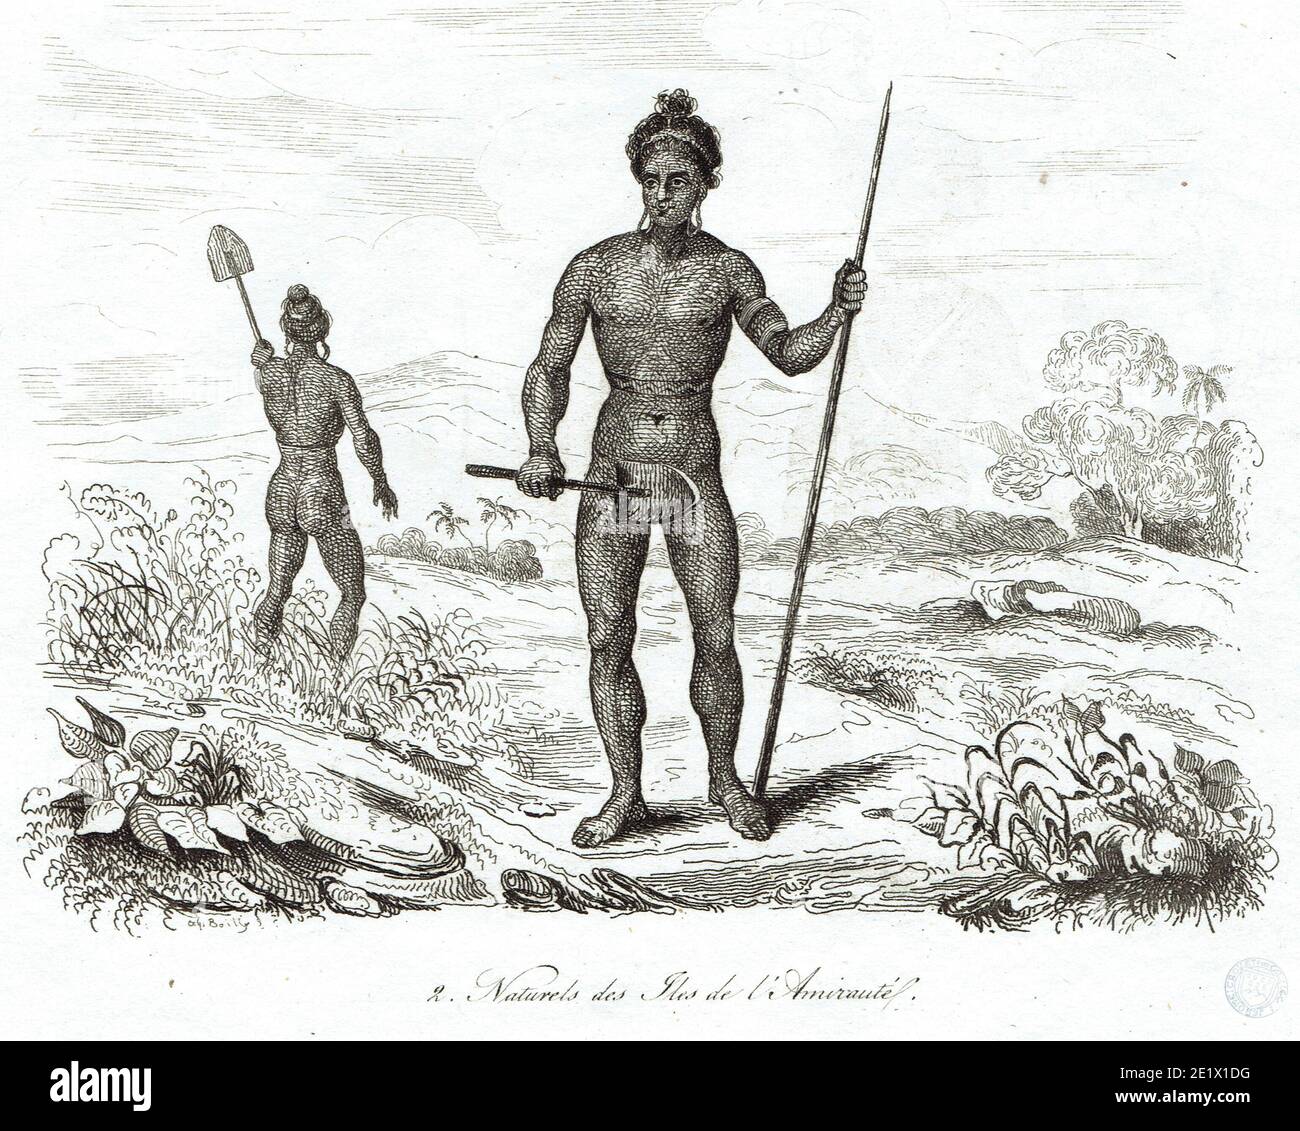 Autochtones des Iles de l'Amirauté Foto Stock